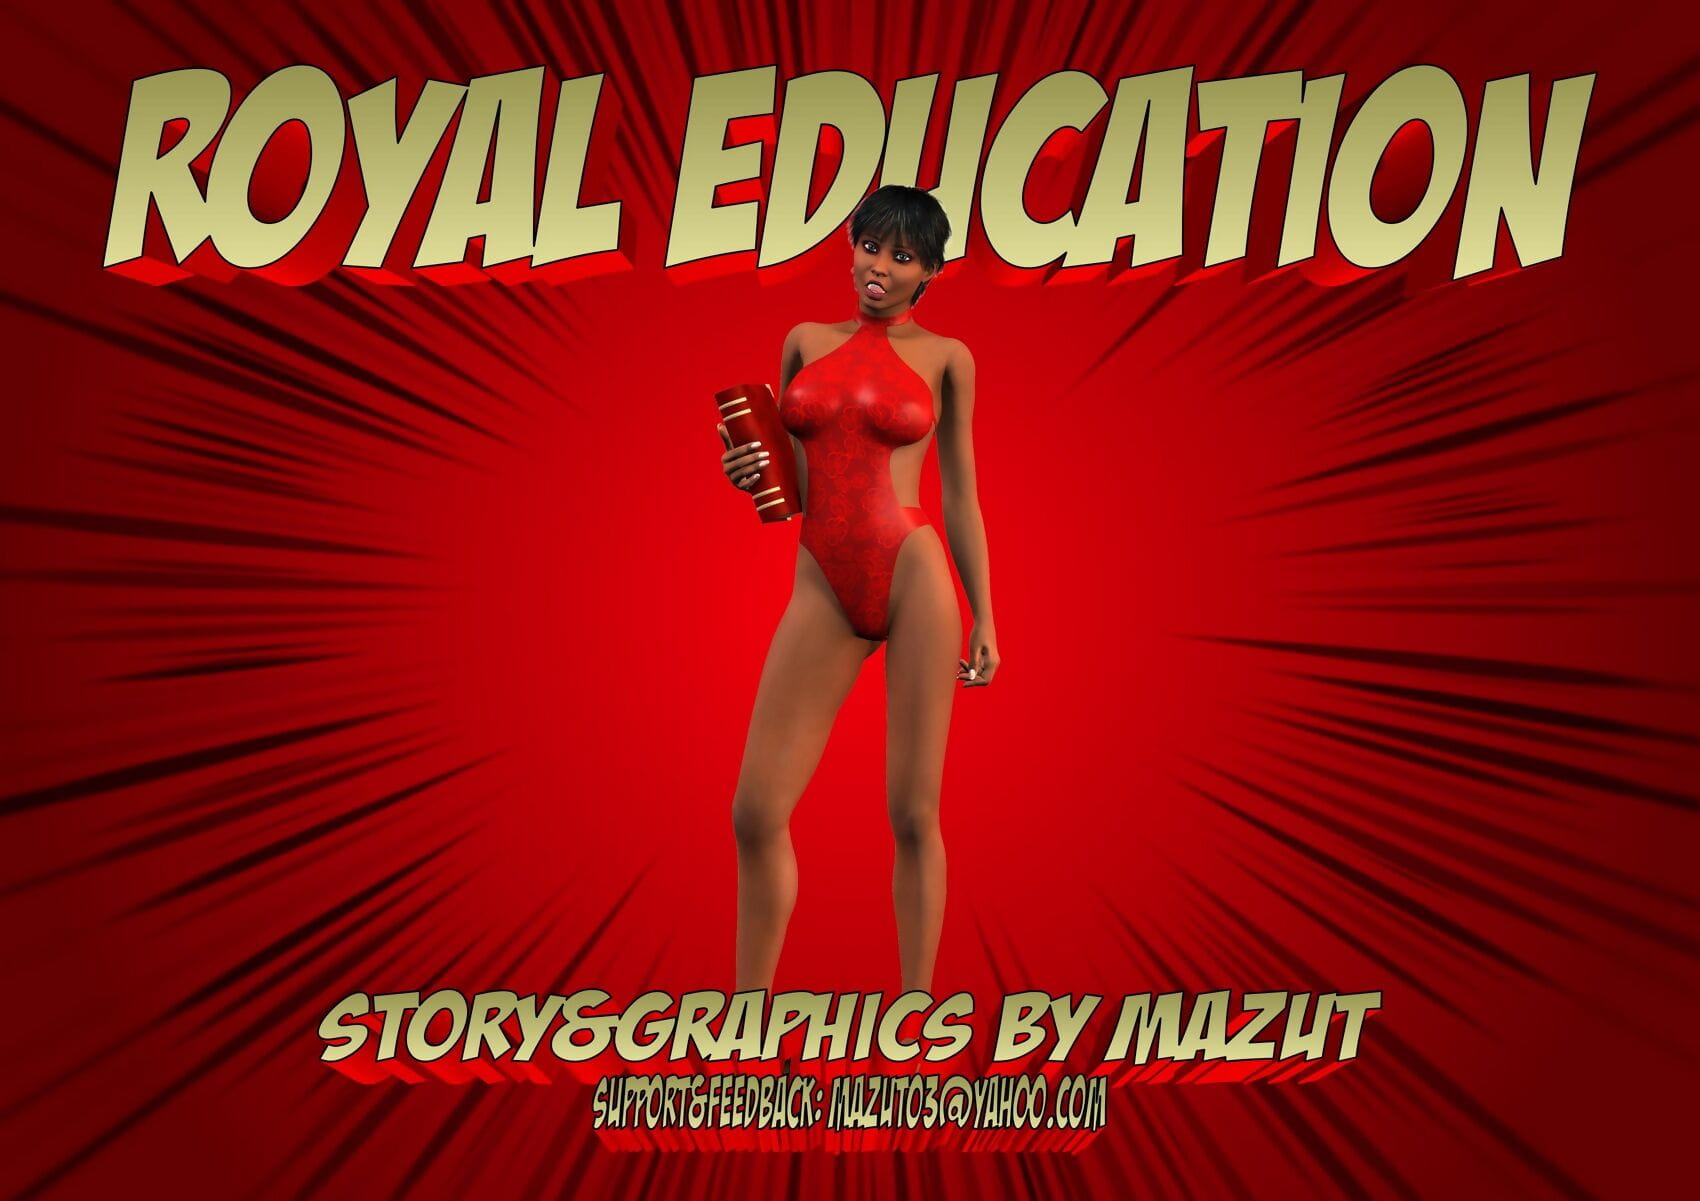 masut royal Istruzione page 1